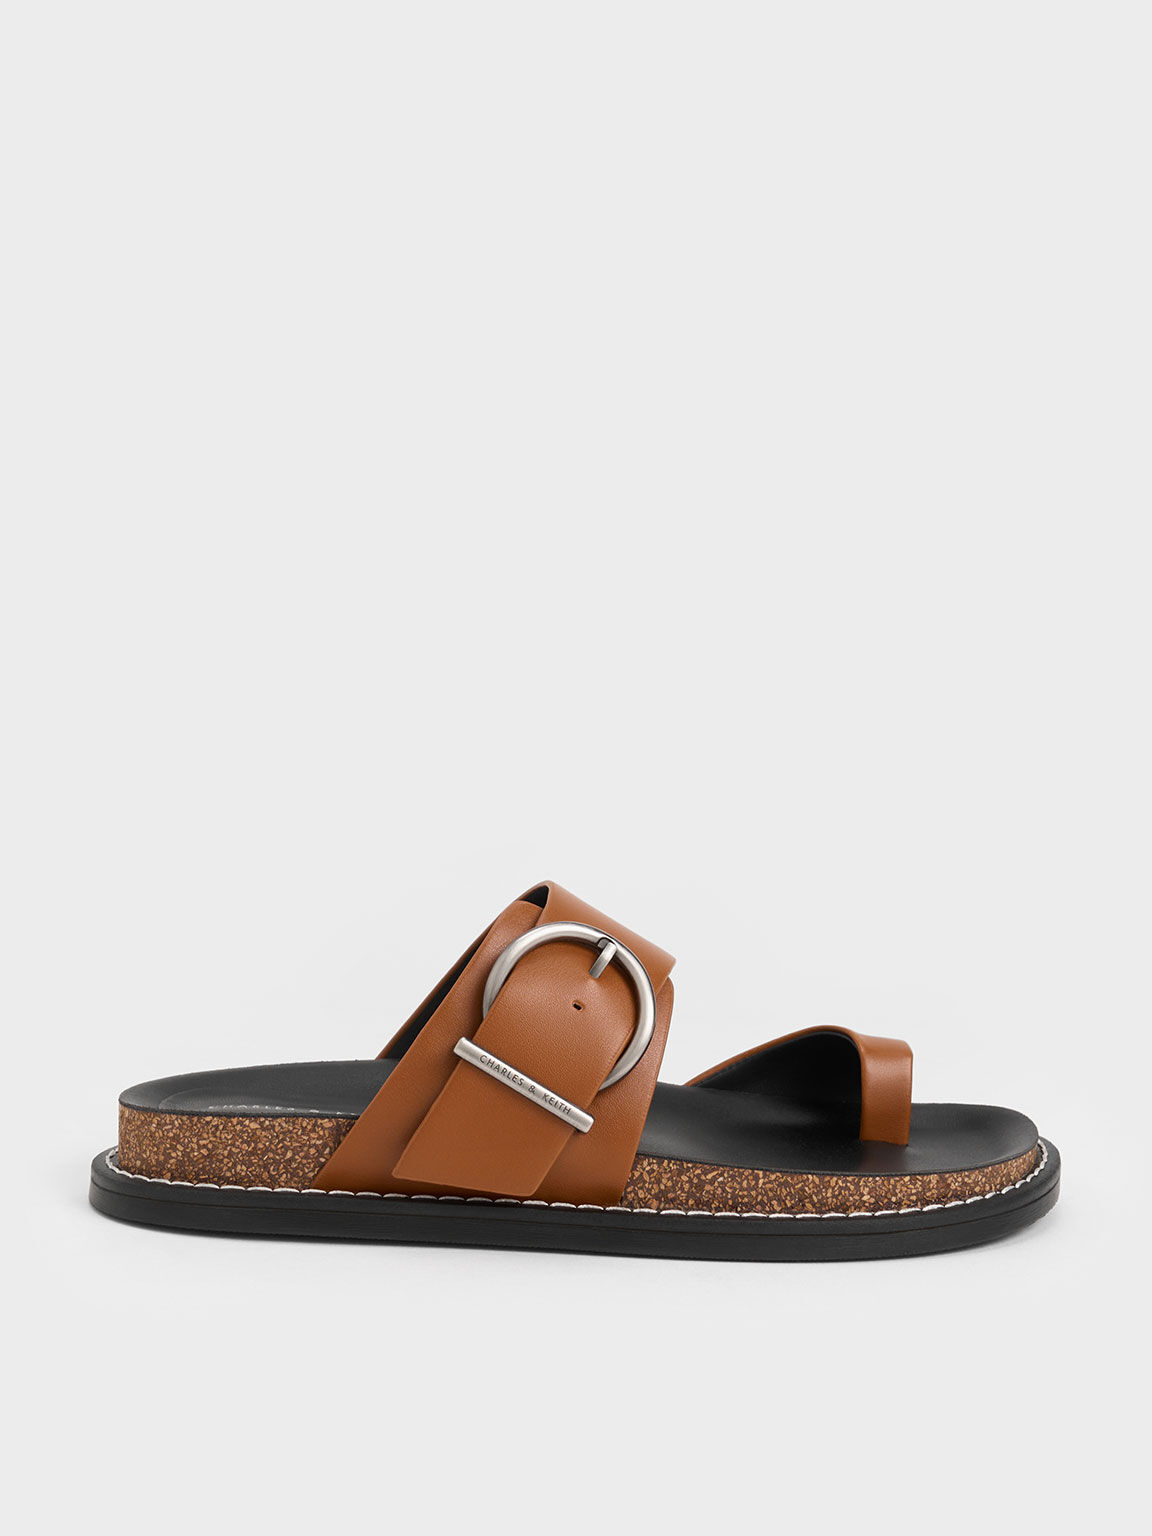 cognac leather flat sandals